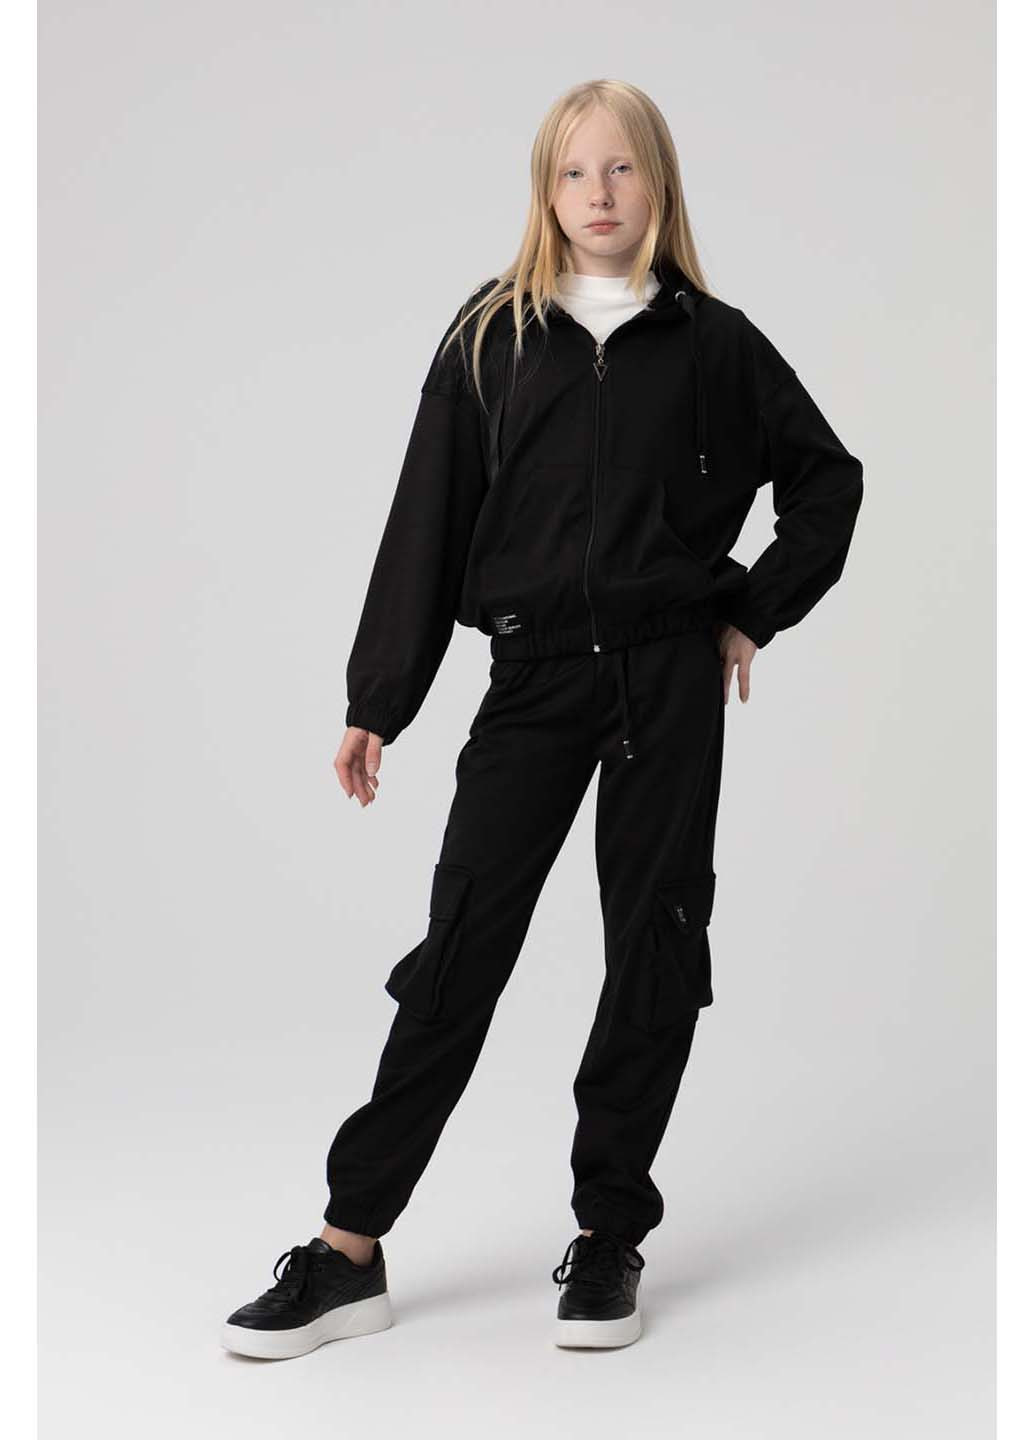 Черный демисезонный костюмы для девочки кофта, брюки Viollen